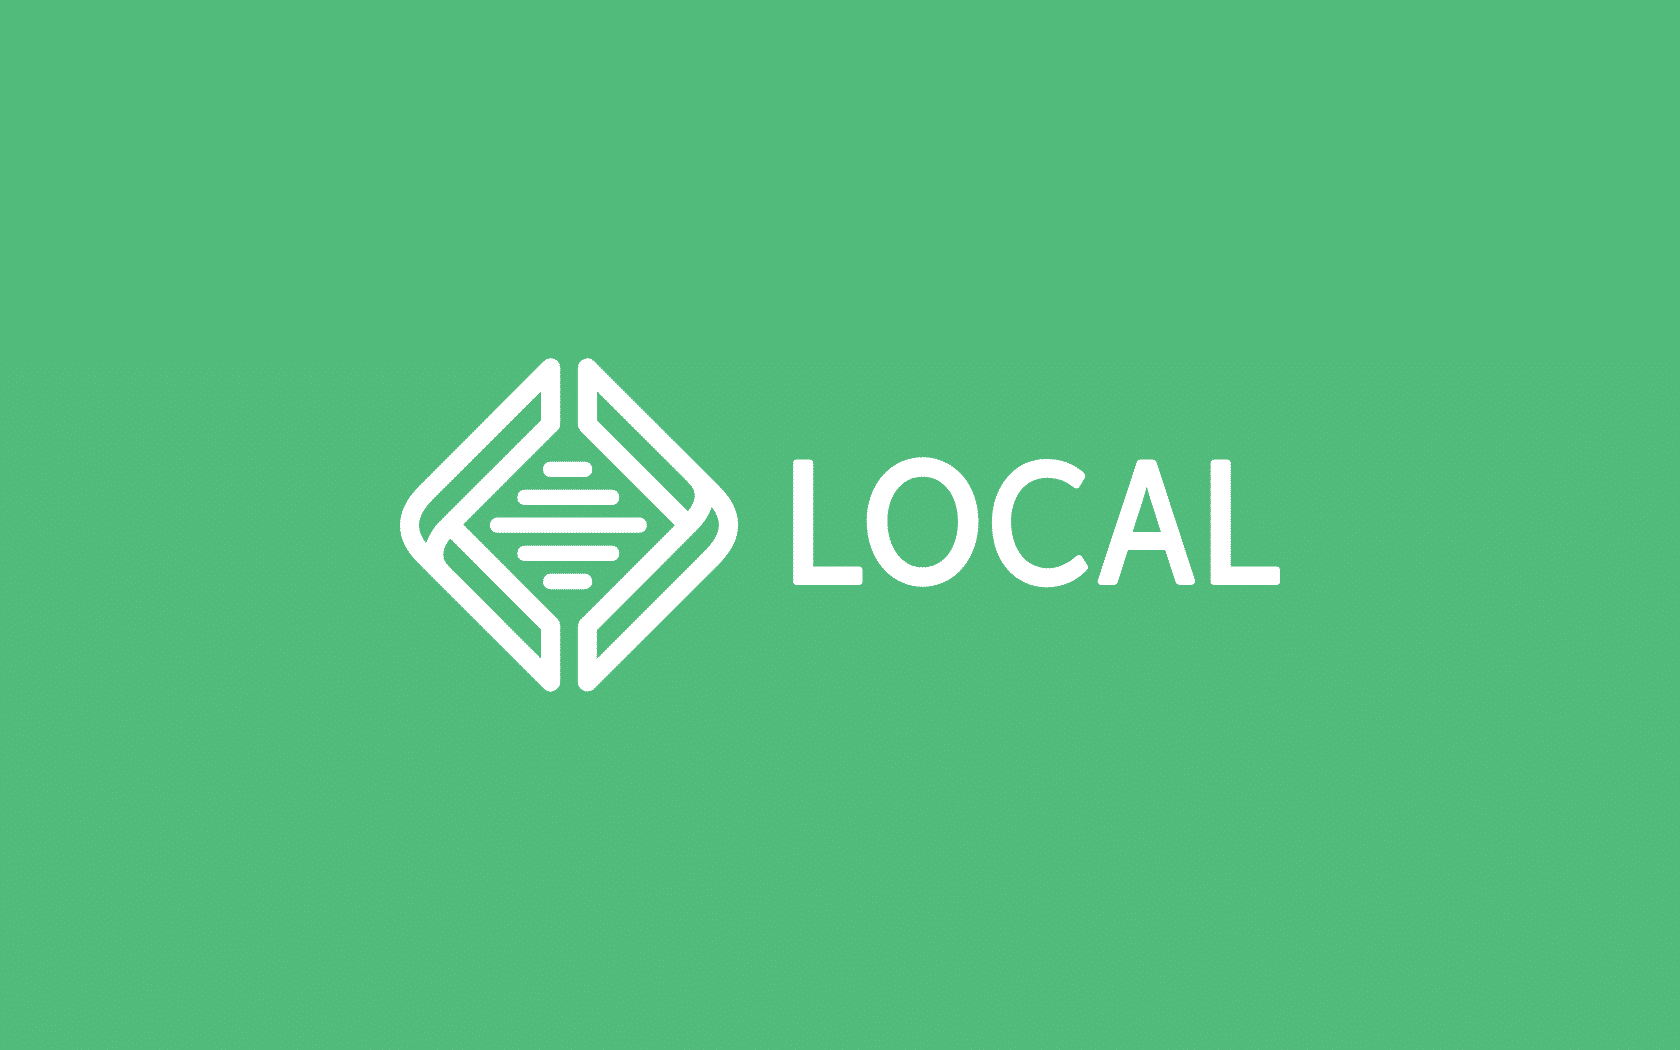 آموزش نصب و راه اندازی سایت محلی با استفاده از نرم افزار LocalWP